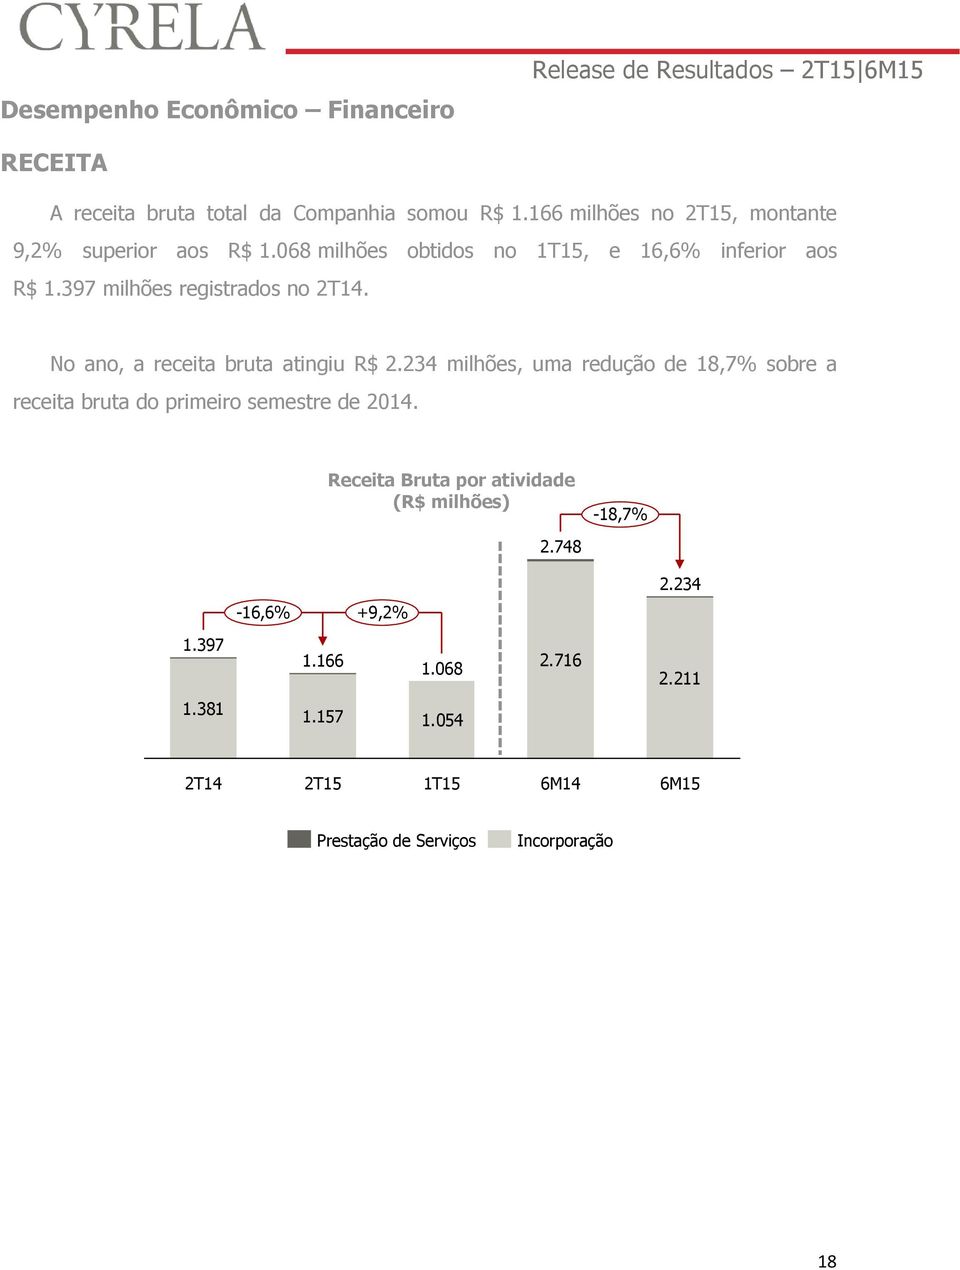 No ano, a receita bruta atingiu R$ 2.234 milhões, uma redução de 18,7% sobre a receita bruta do primeiro semestre de 2014.